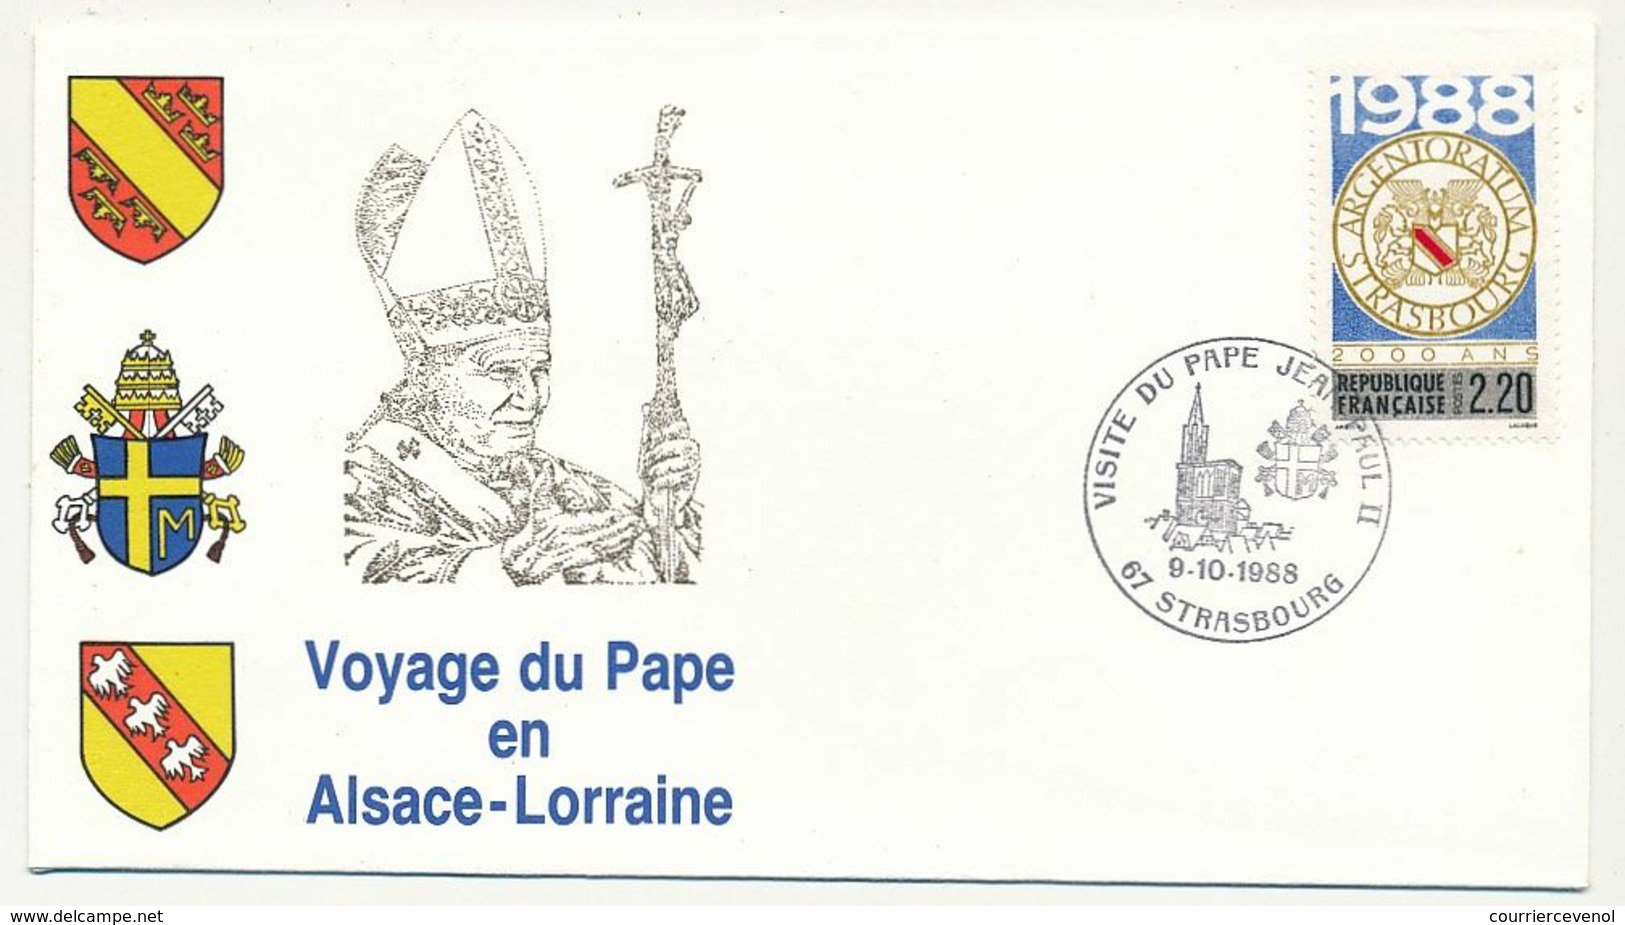 FRANCE - 7 Enveloppes Voyage Du Pape En Alsace Lorraine 1988 + VATICAN - 1 Env Idem - Cristianesimo